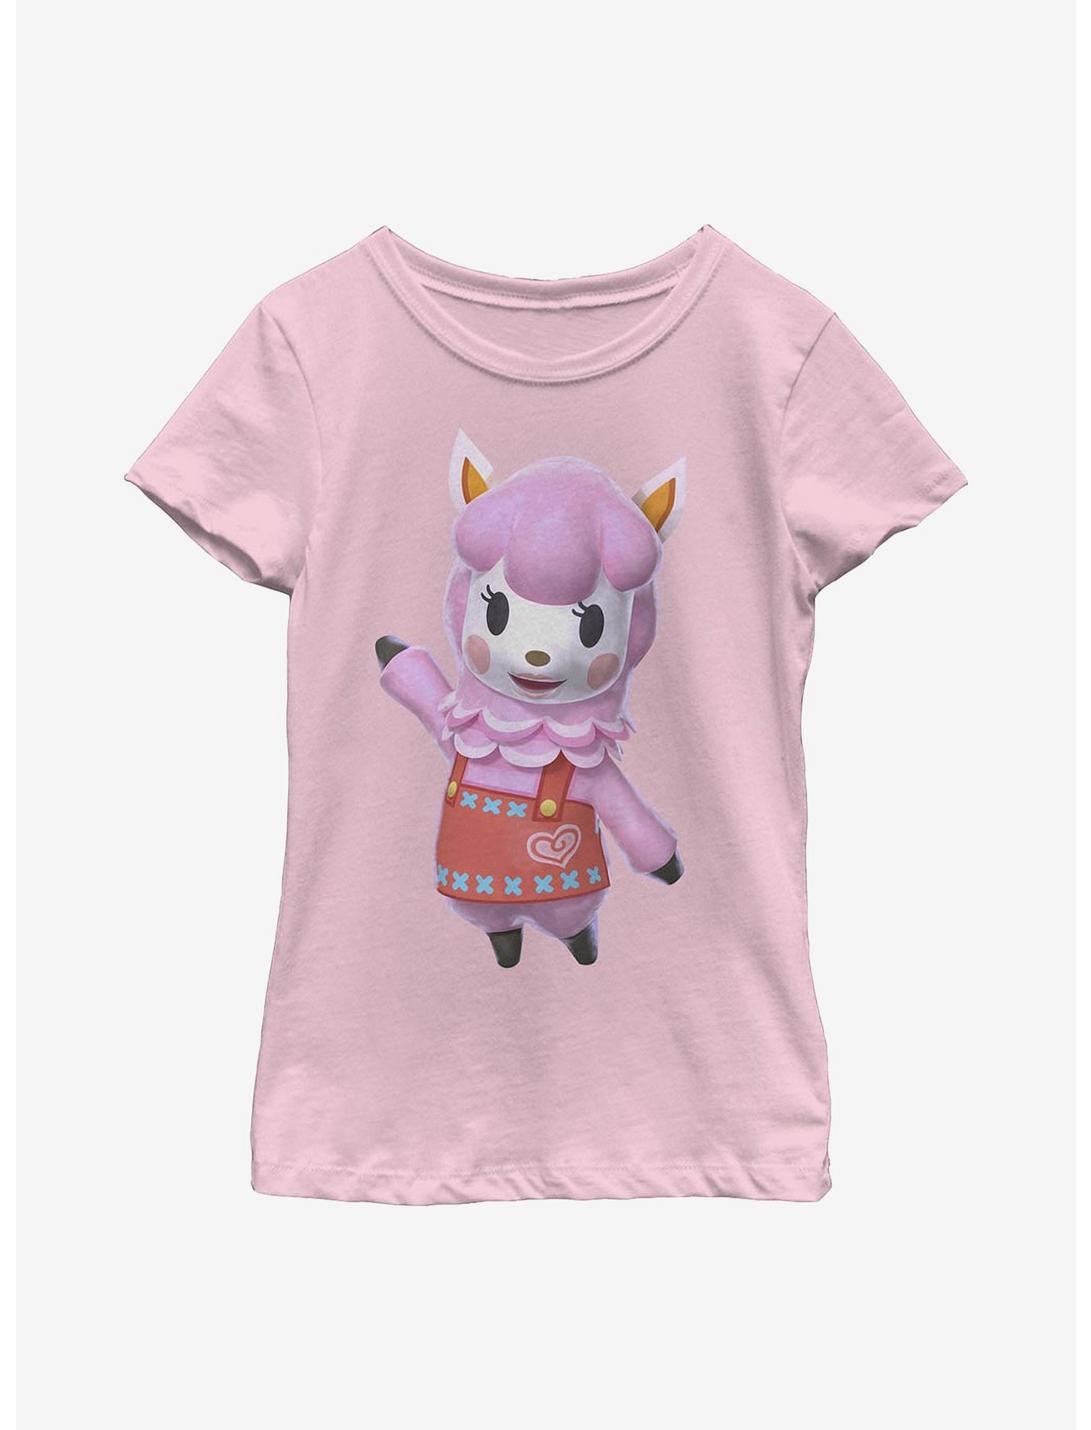 Animal Crossing Reese Pose Youth Girls T-Shirt, PINK, hi-res